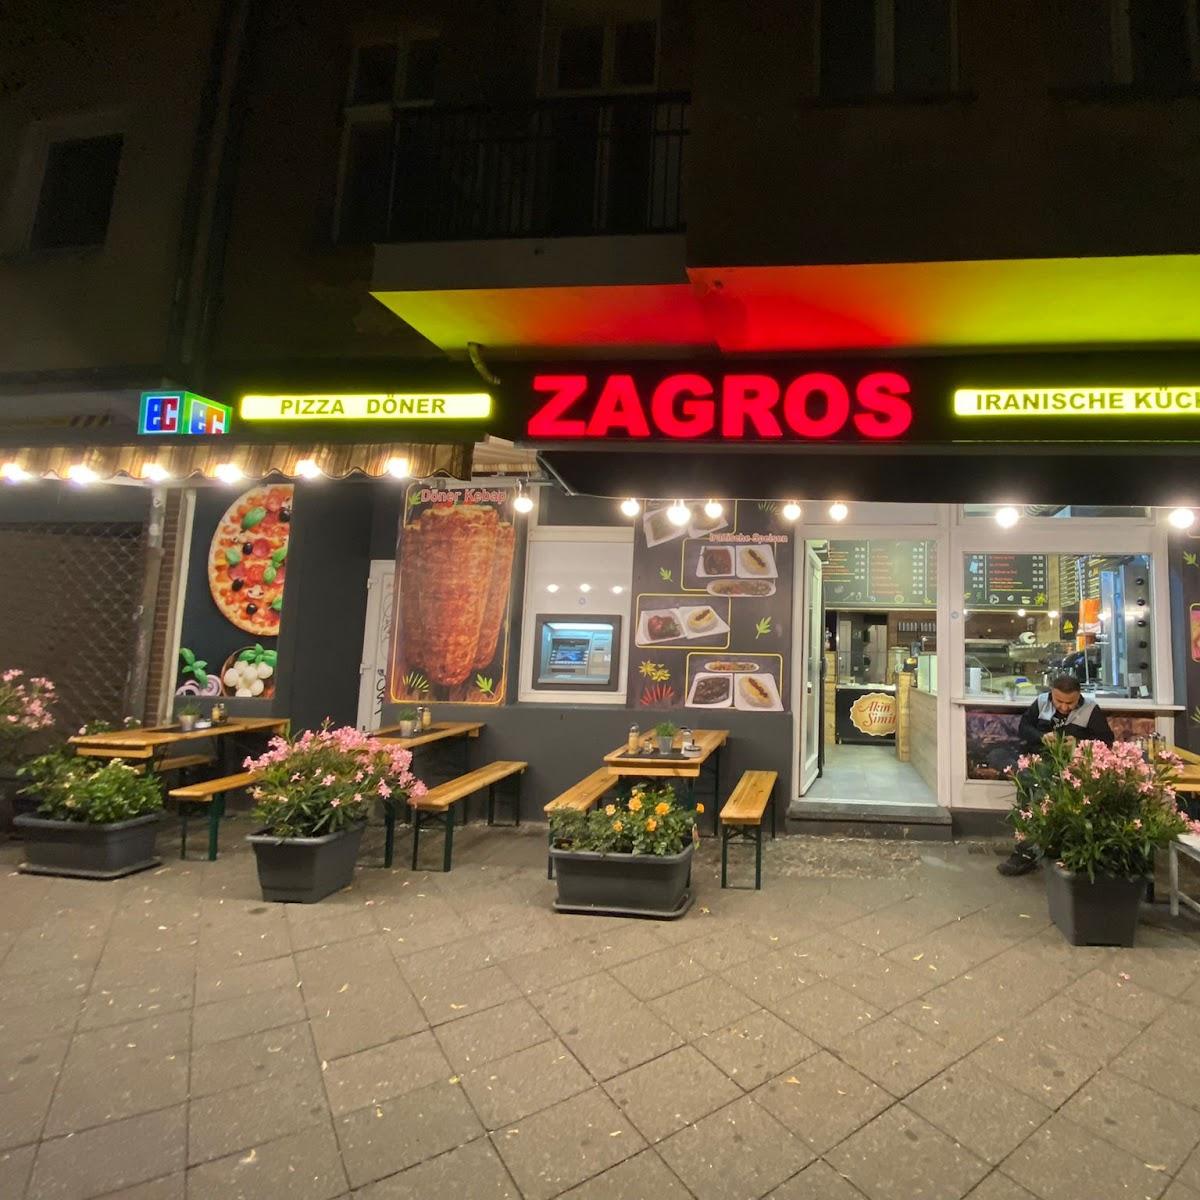 Restaurant "Zagros Restaurant" in Berlin